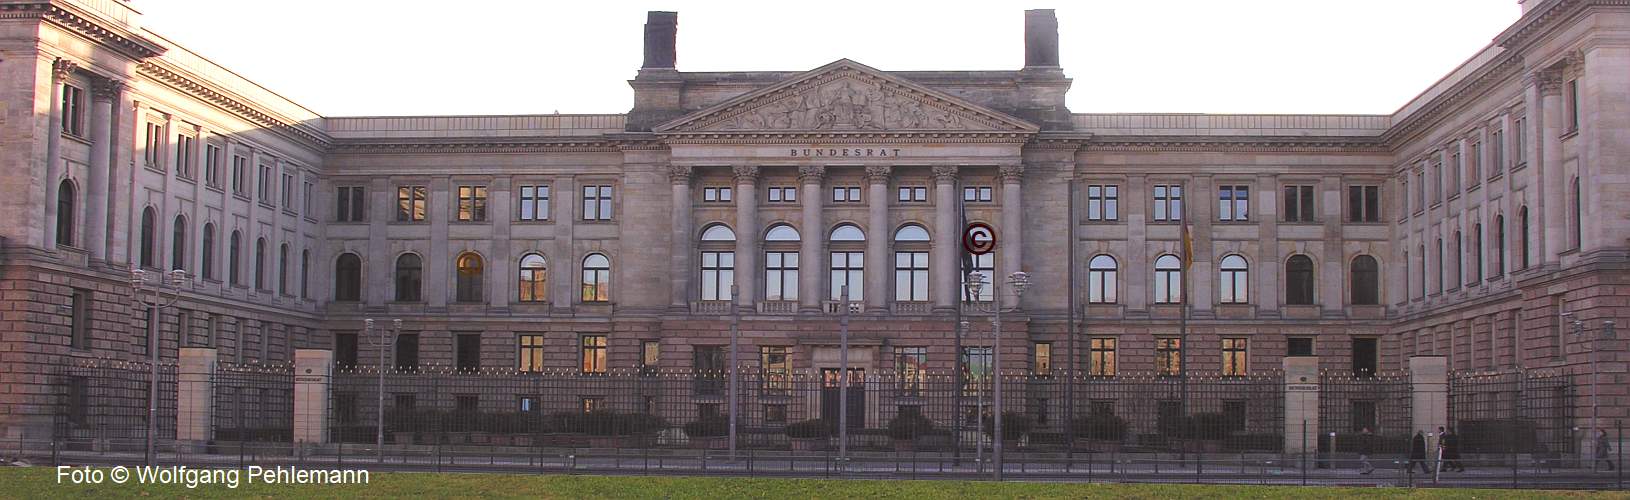 Bundesrat Preussisches Herrenhaus in Berlin - Foto © Wolfgang Pehlemann